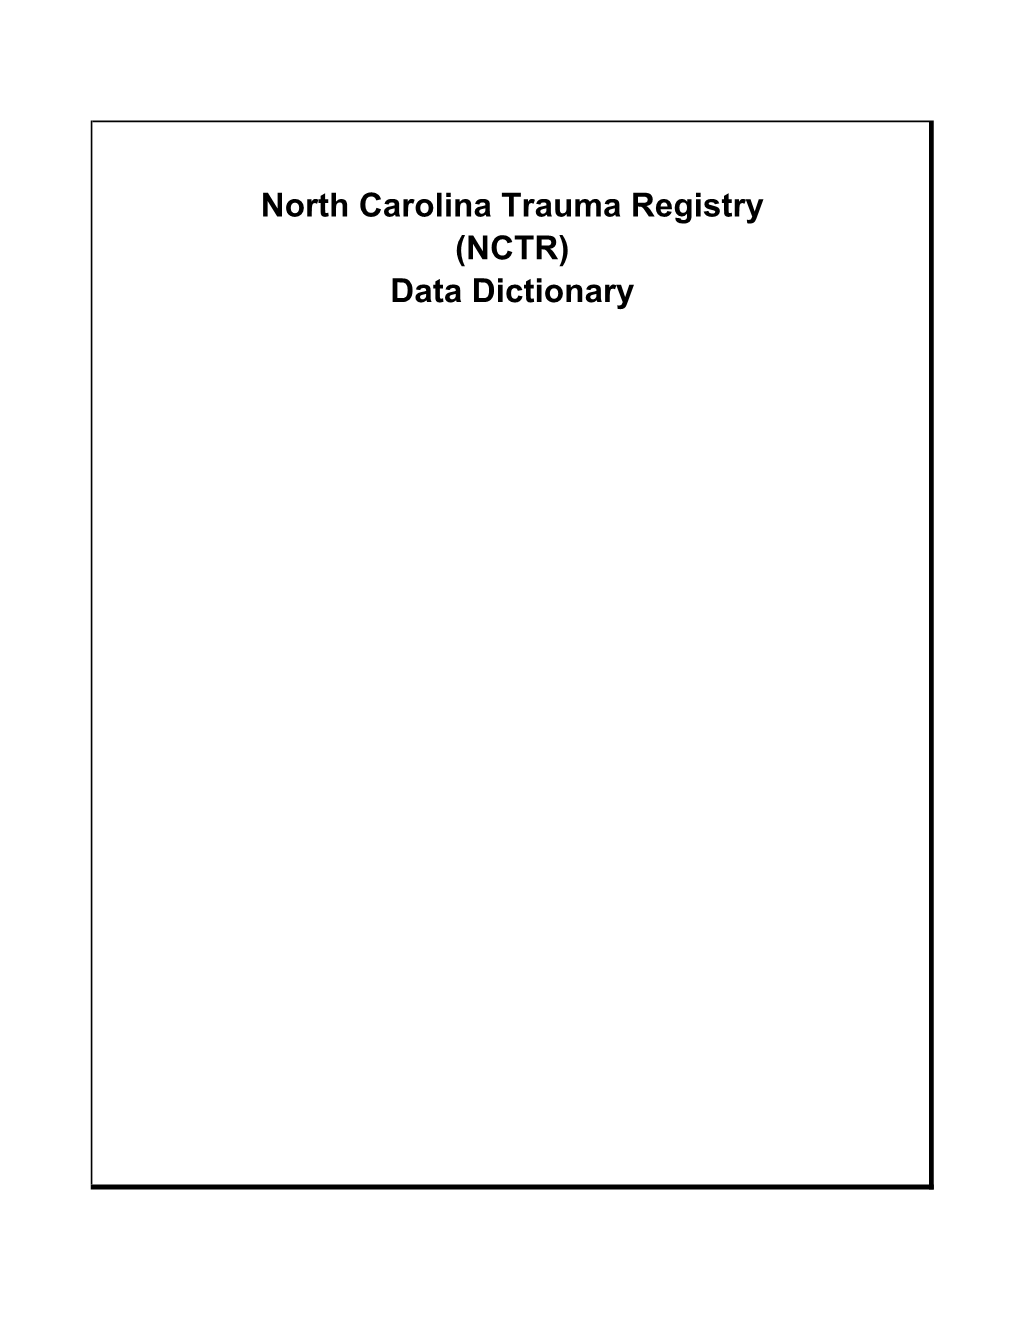 North Carolina Trauma Registry (NCTR) Data Dictionary NCTR Data Dictionary